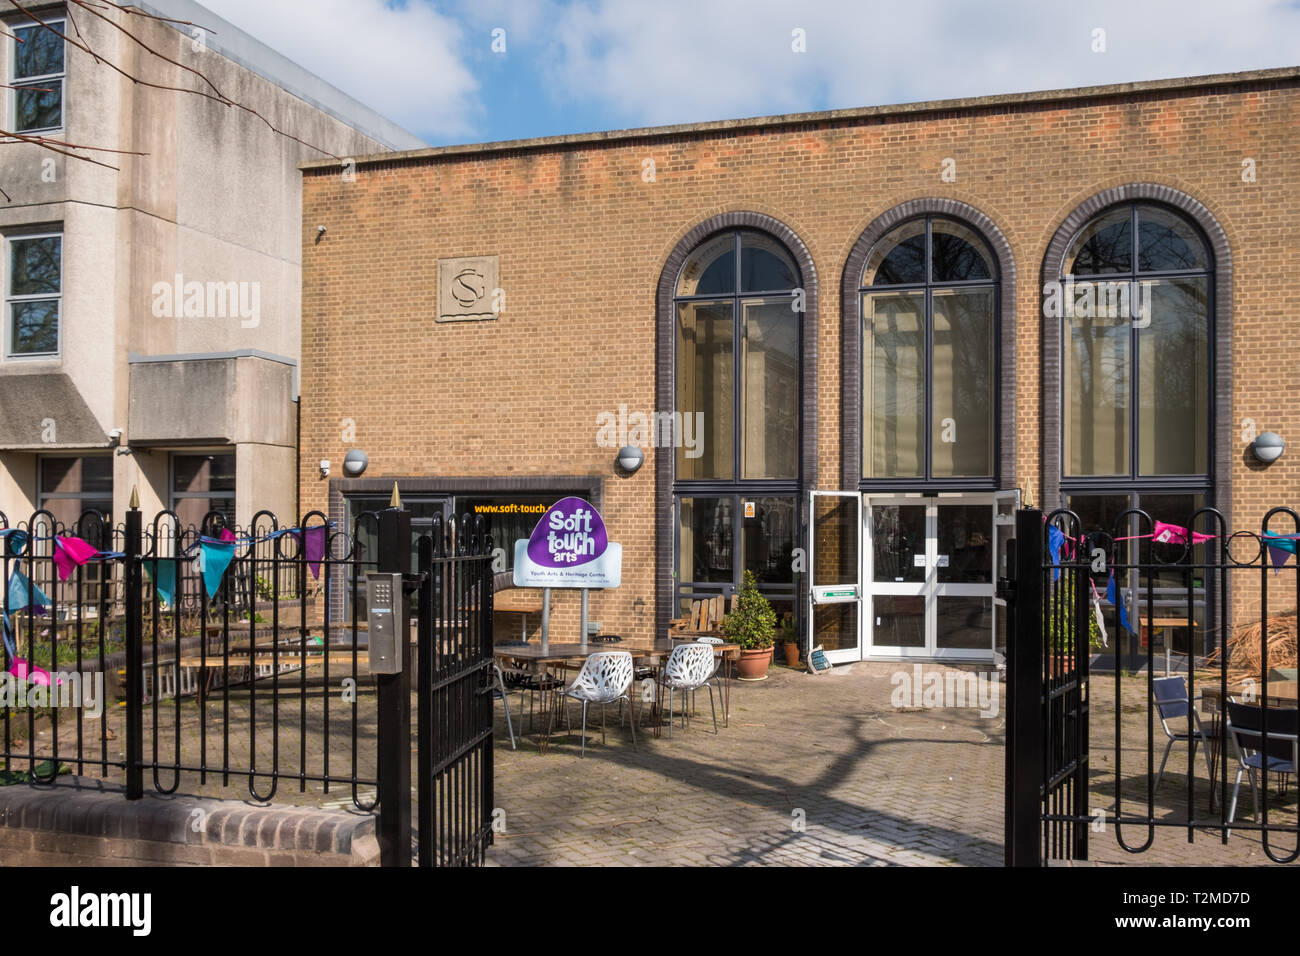 El Centro de Artes de tacto suave en Leicester, una organización benéfica que ofrece artes, medios y actividades de música para jóvenes desfavorecidos Foto de stock